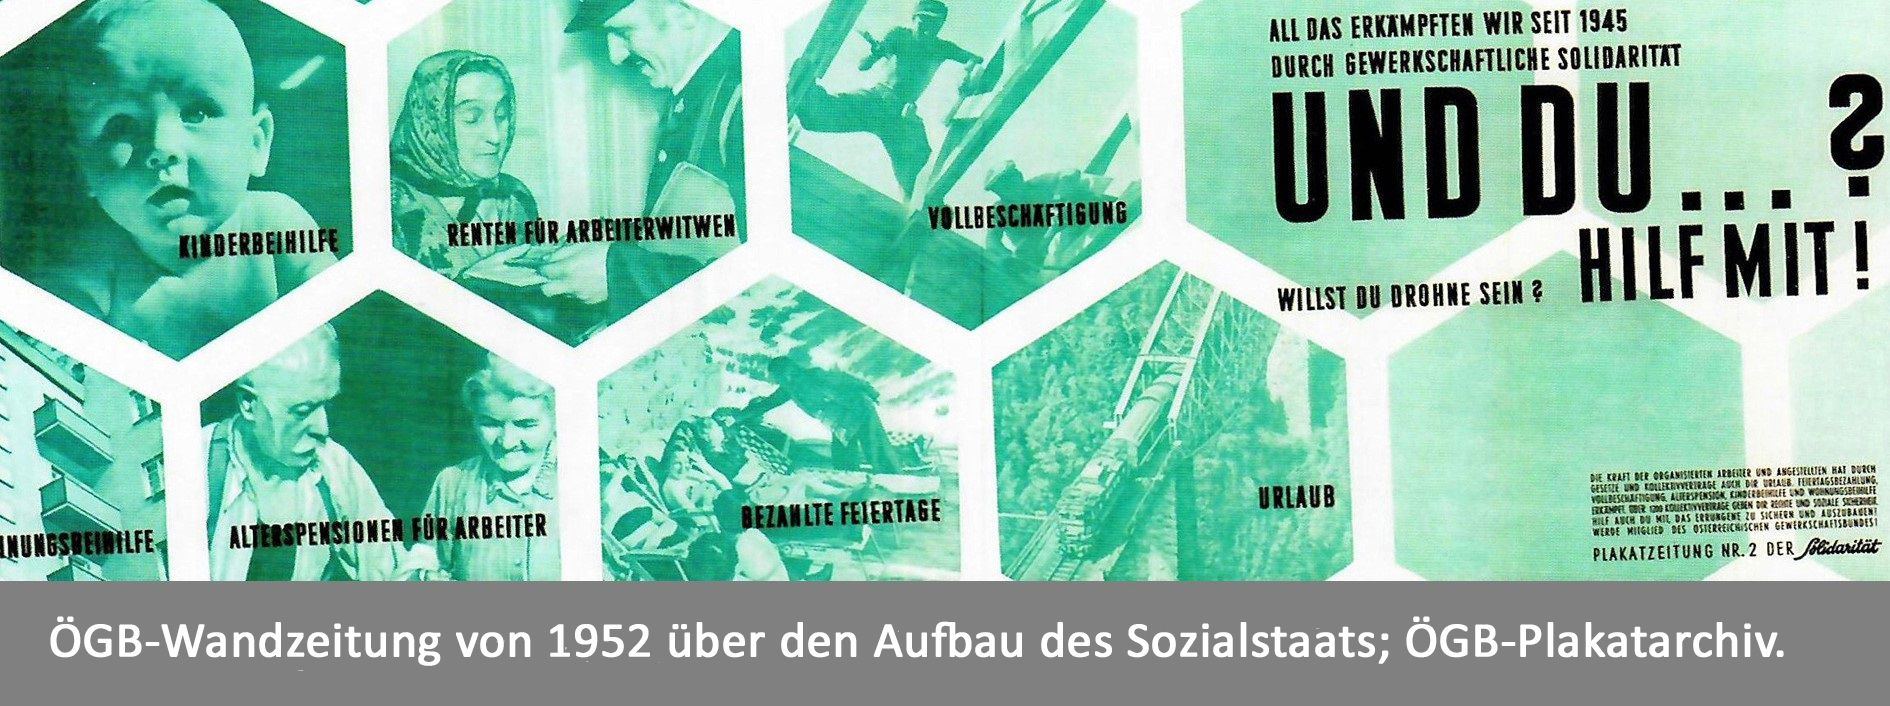 ÖGB-Wandplakat aus dem Jahr 1952 mit Darstellung des sozialen Fortschritts seit 1945. Symbolbild für den Sozialstaat und seine Geschichte.